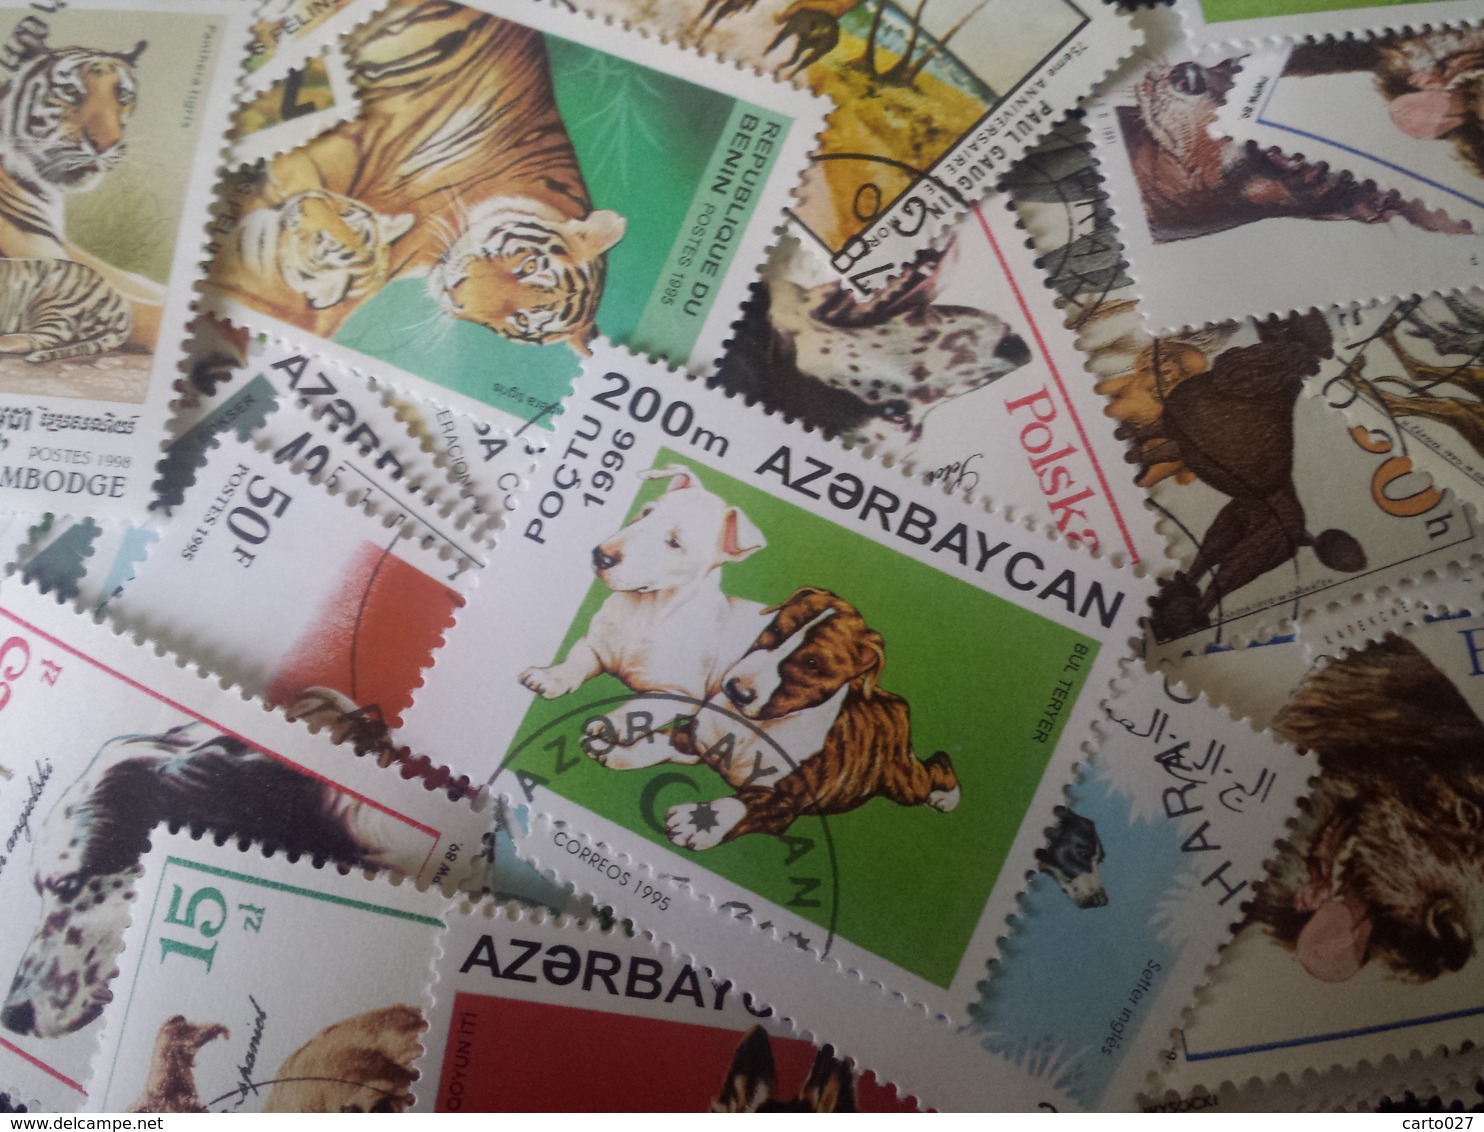 timbres vrac monde et nombreuse thematiques lot de 1000 timbres lot12